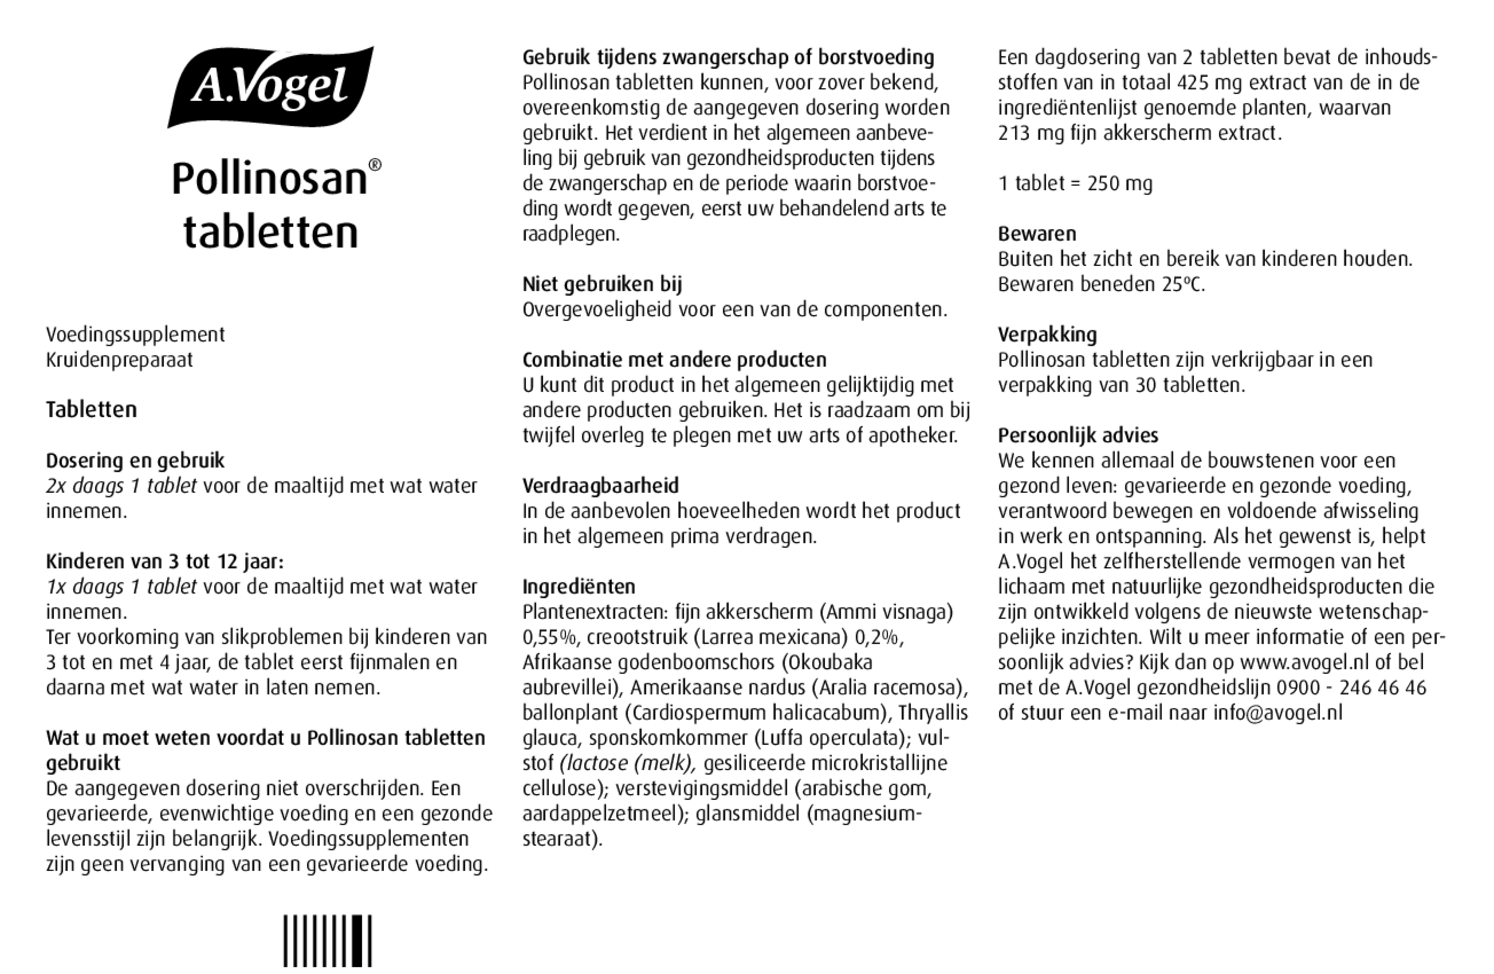 Pollinosan Tabletten afbeelding van document #1, gebruiksaanwijzing